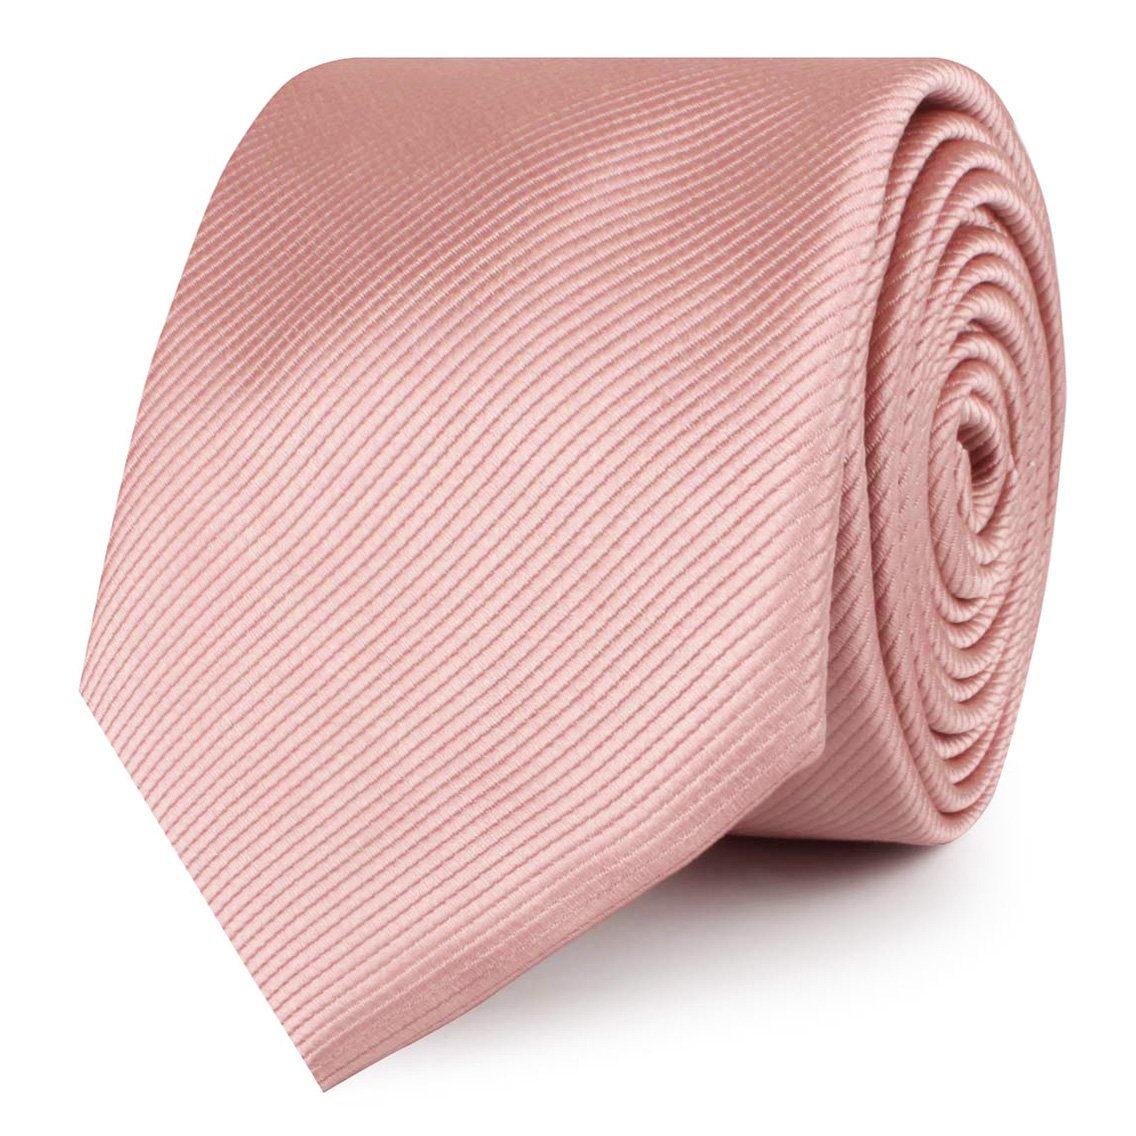 Dusty Blush Pink Twill Skinny Ties